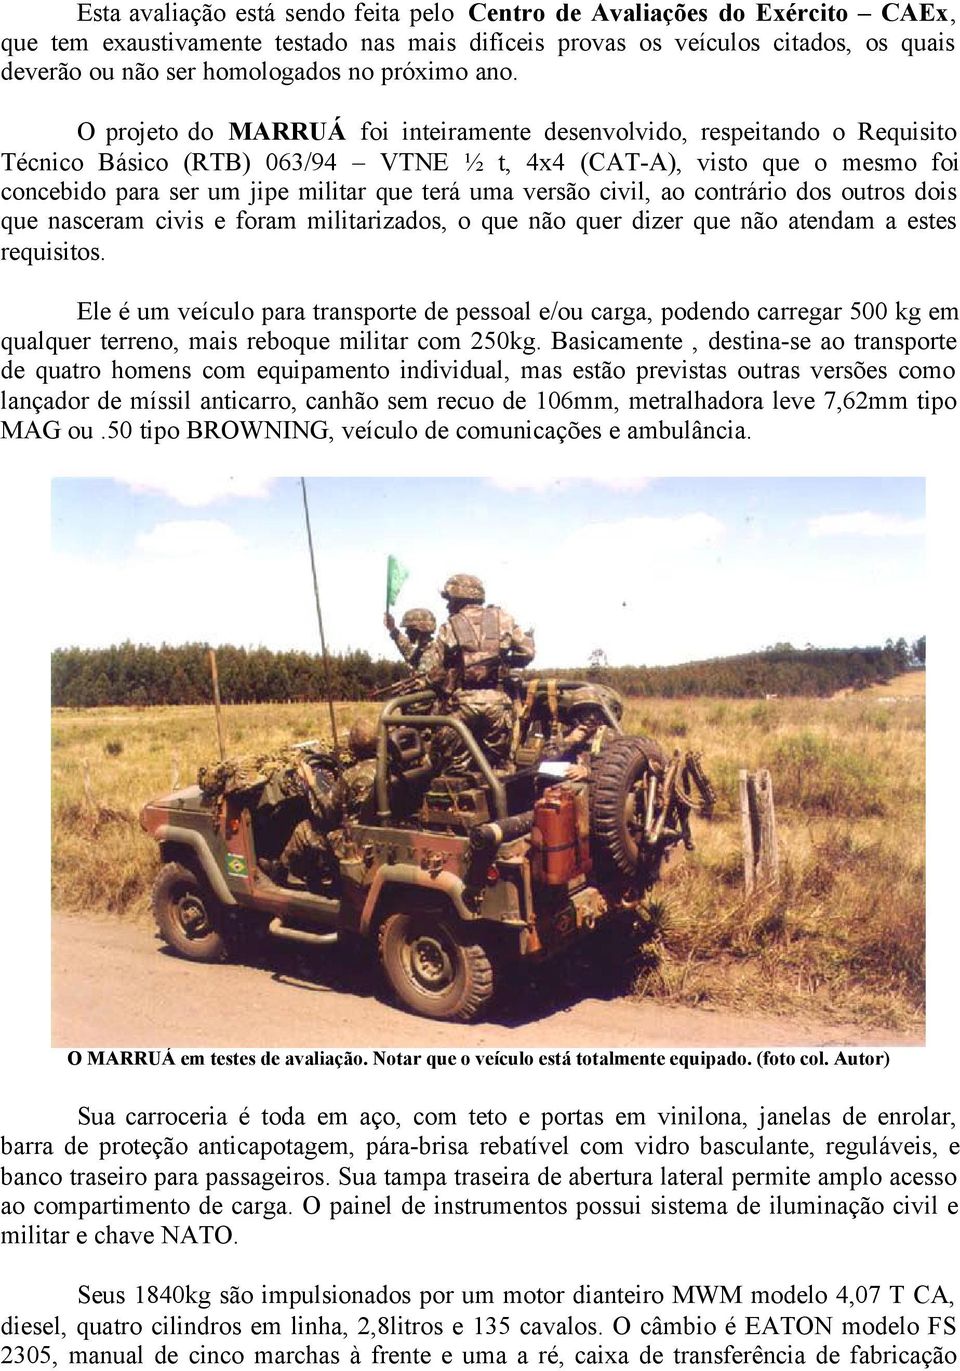 O projeto do MARRUÁ foi inteiramente desenvolvido, respeitando o Requisito Técnico Básico (RTB) 063/94 VTNE ½ t, 4x4 (CAT-A), visto que o mesmo foi concebido para ser um jipe militar que terá uma